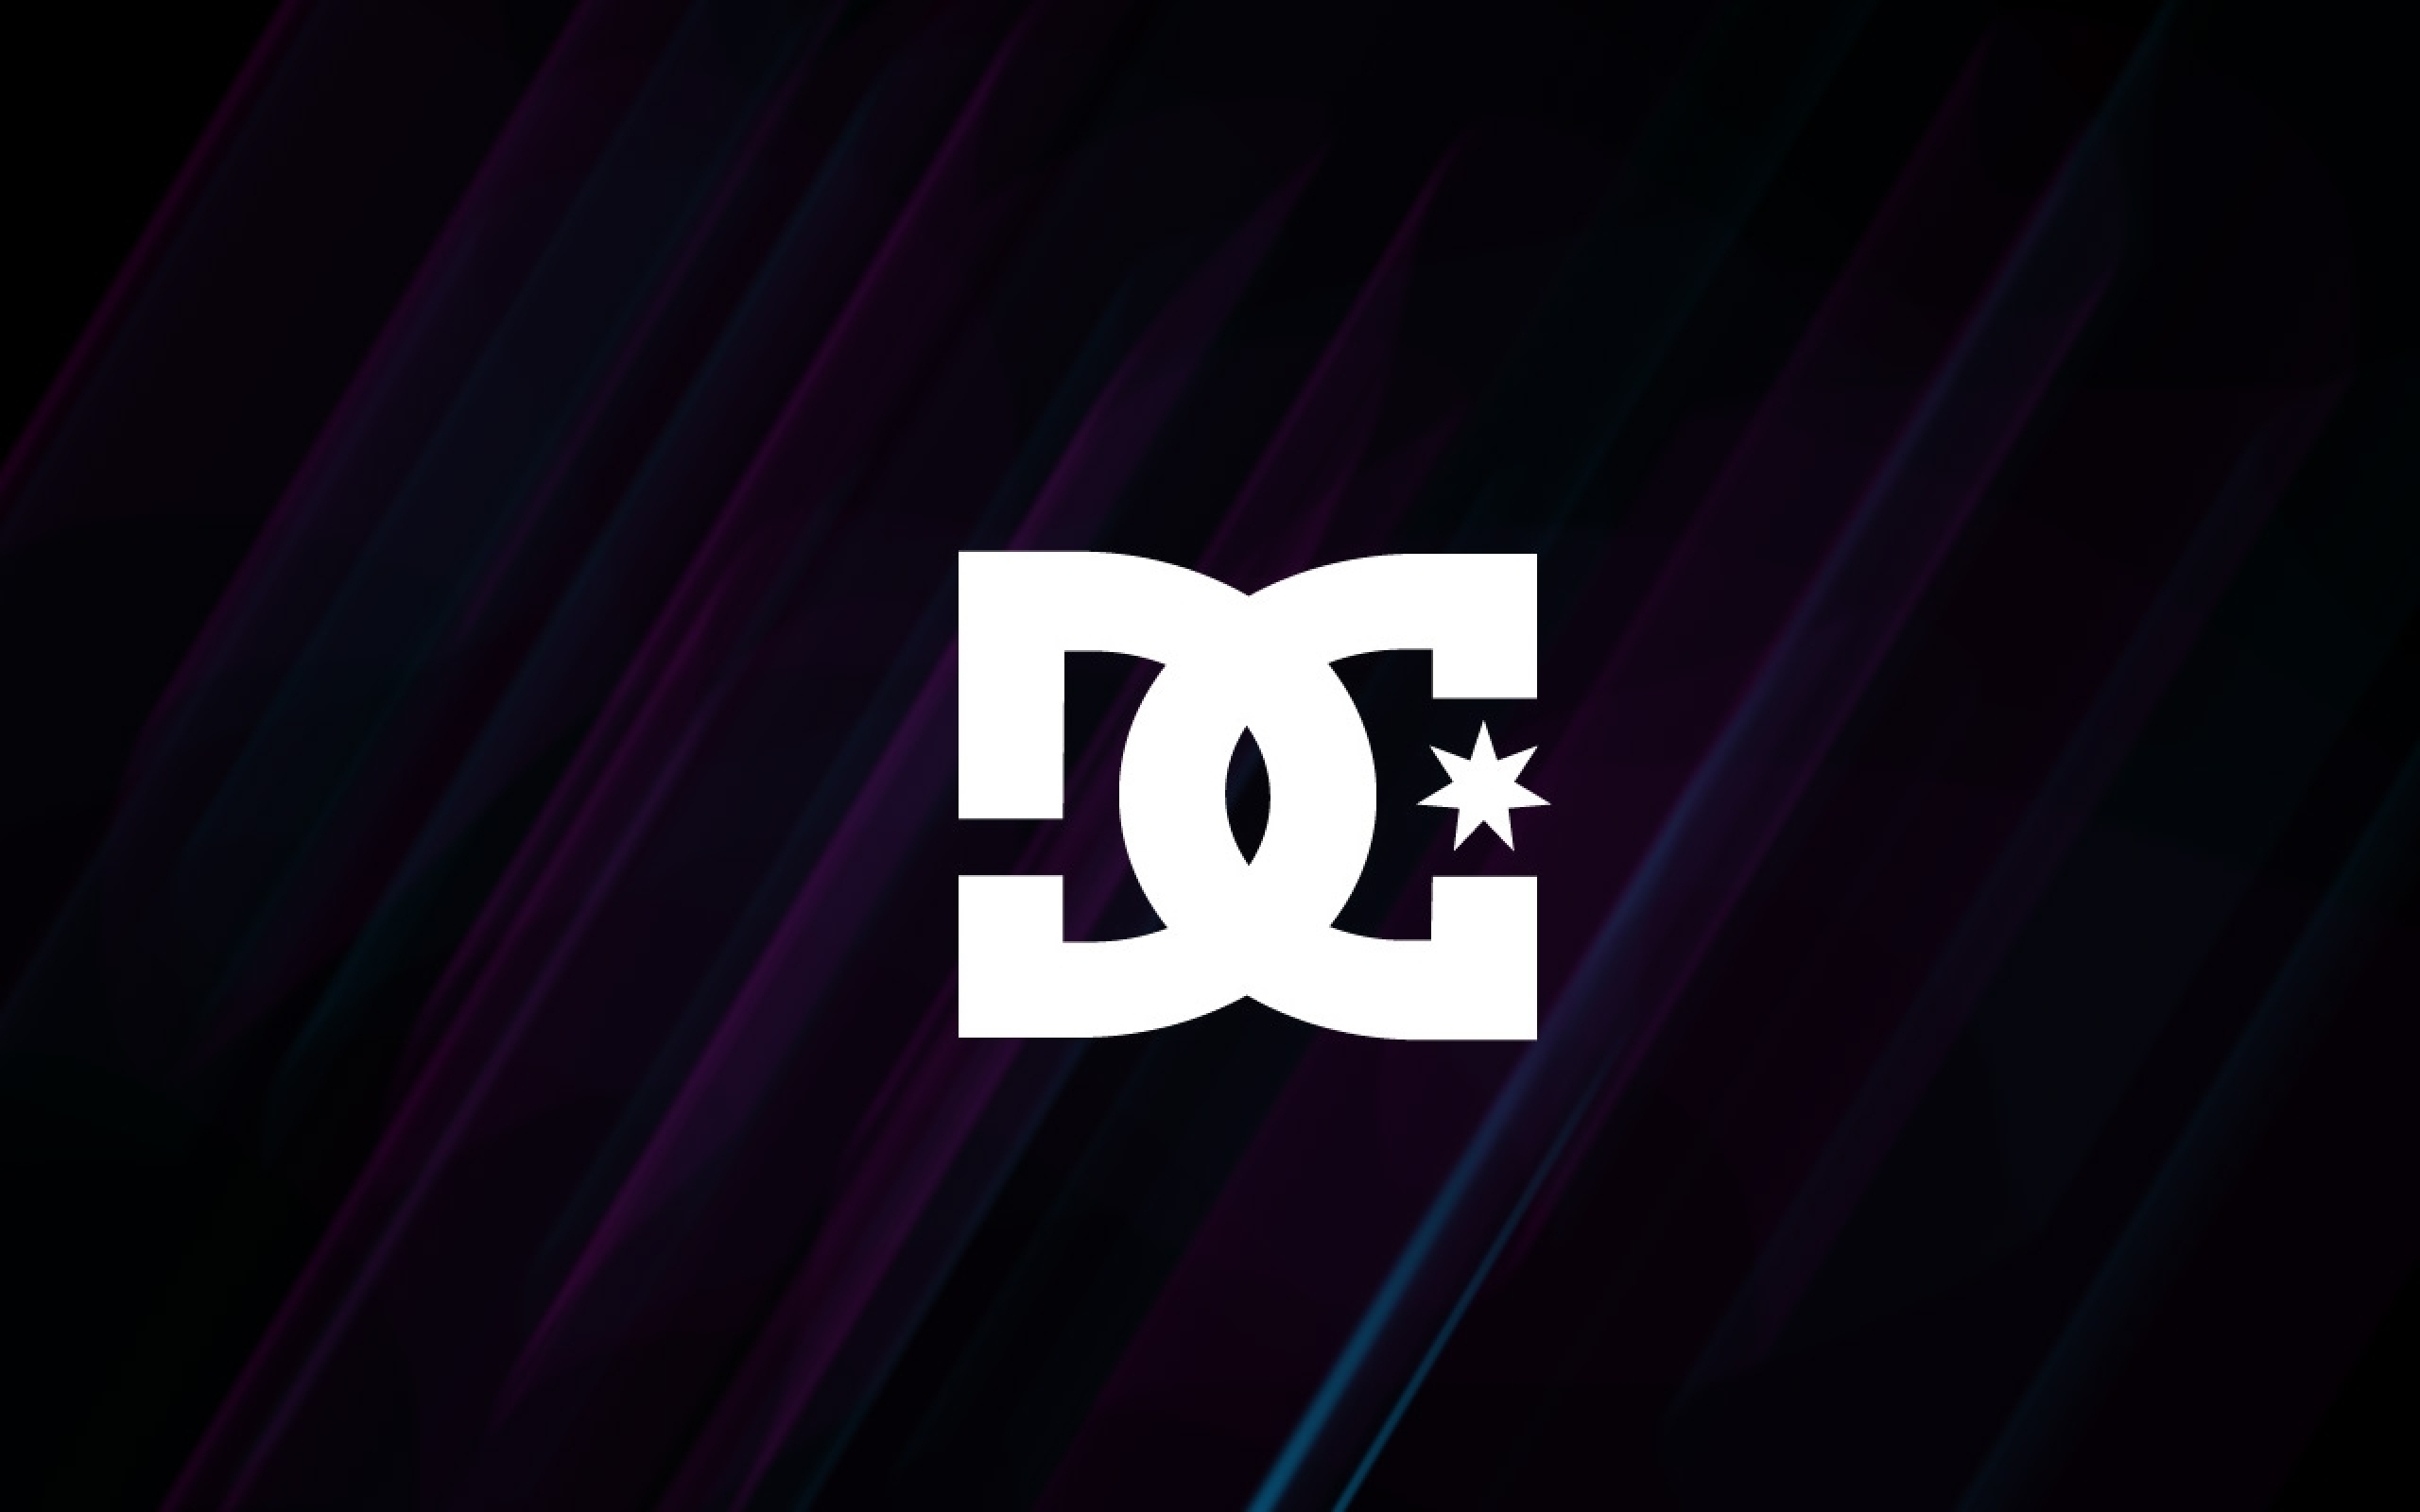 dc logo wallpaper,text,schriftart,violett,lila,grafik